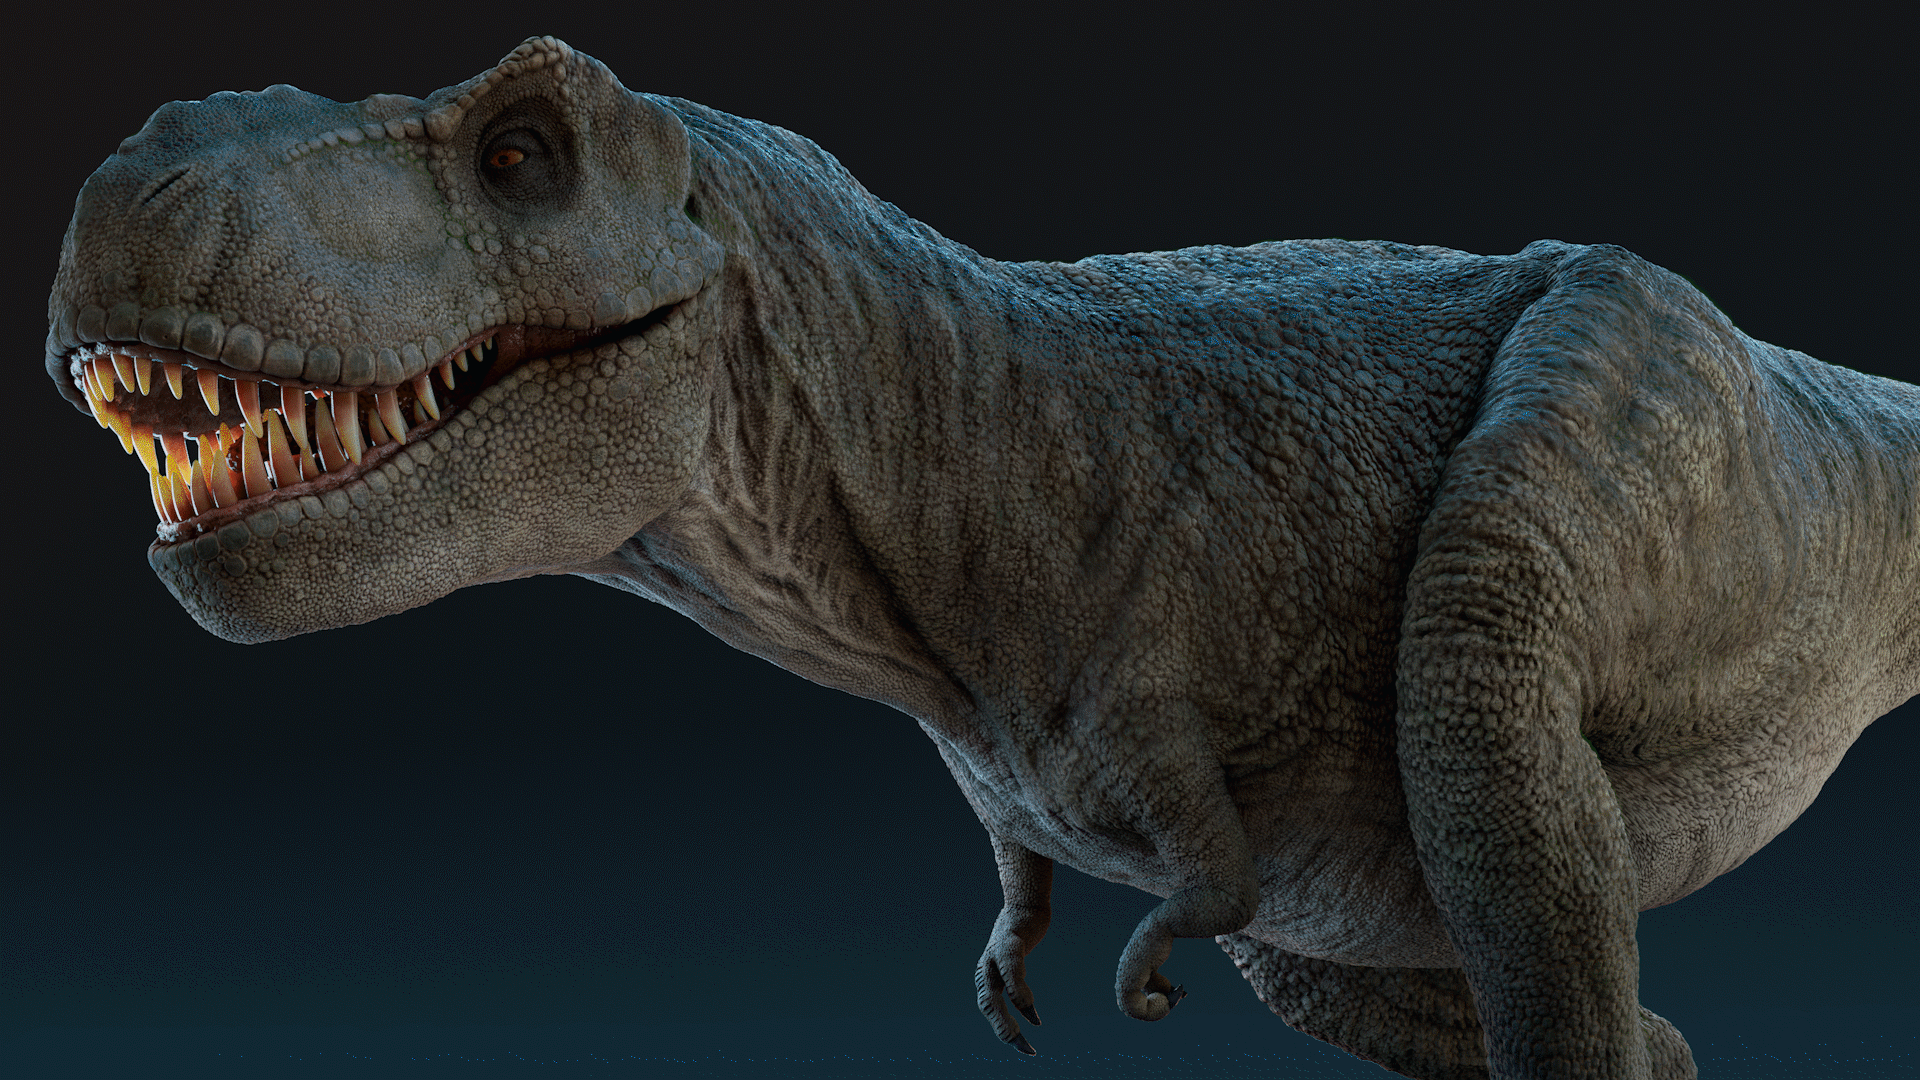 ArtStation - Tyrannosaurus, T-rex Dinosaur